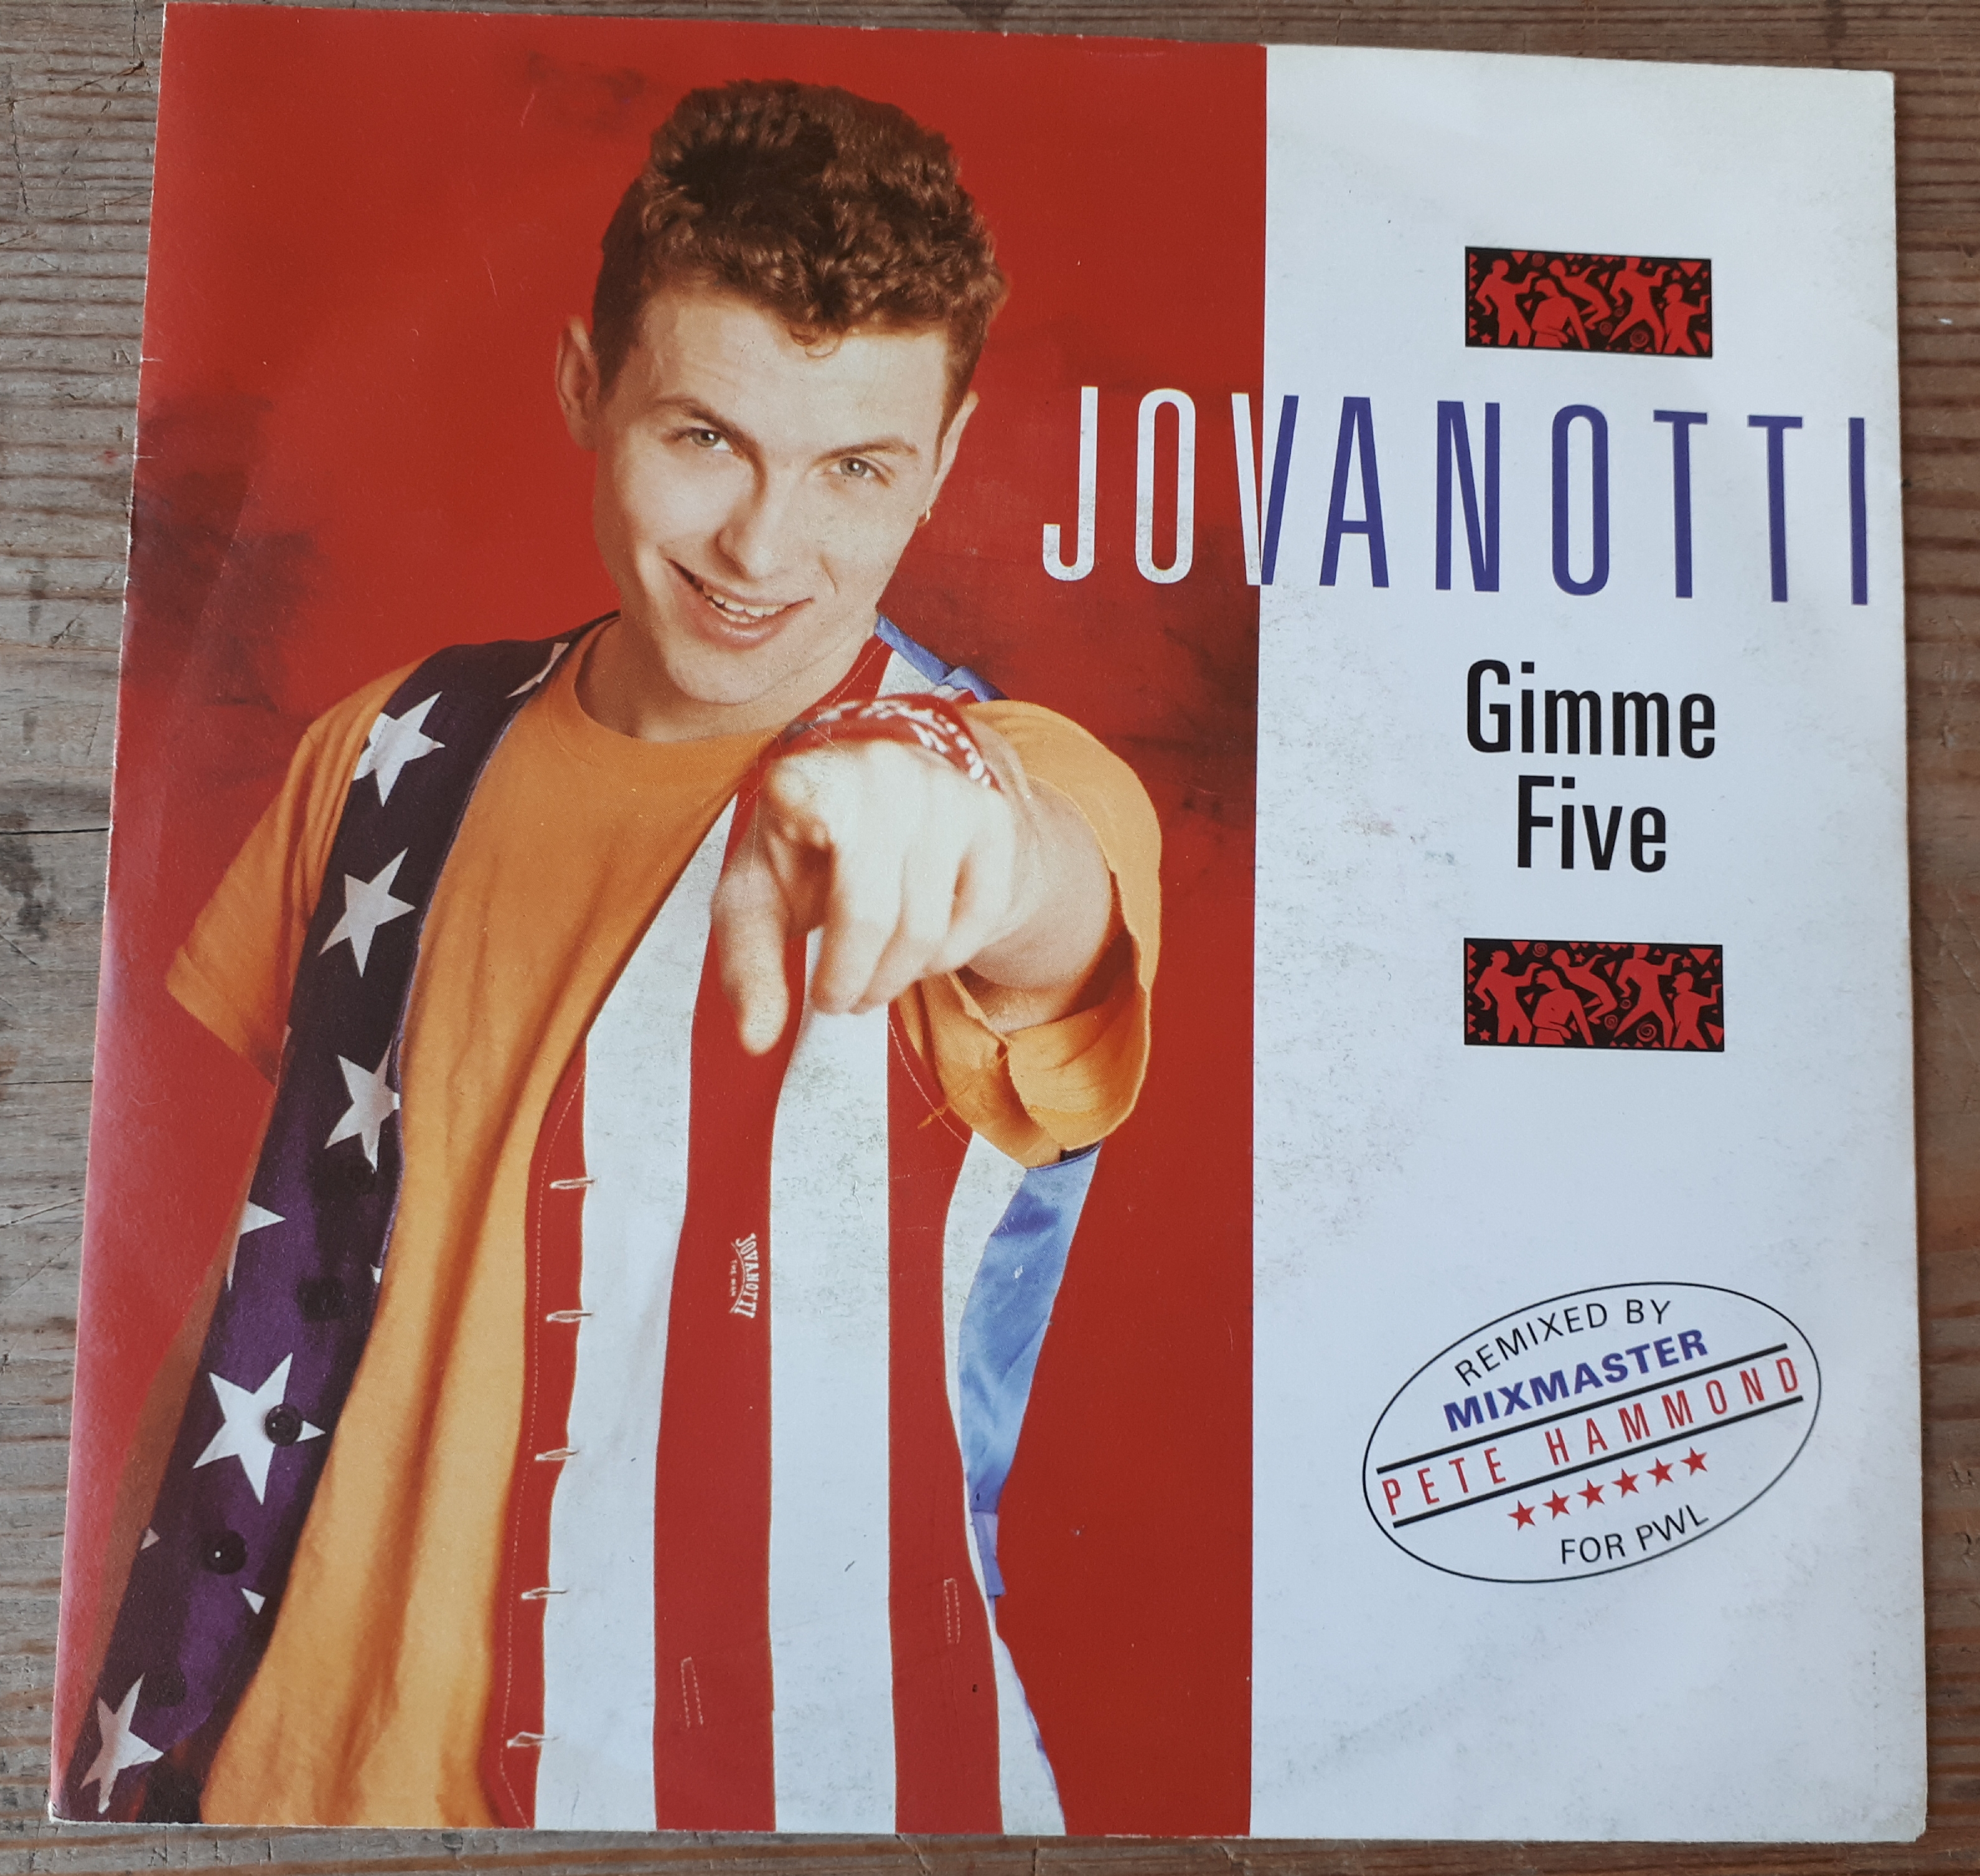 Jovanotti - Gimme five (remix) - Germany